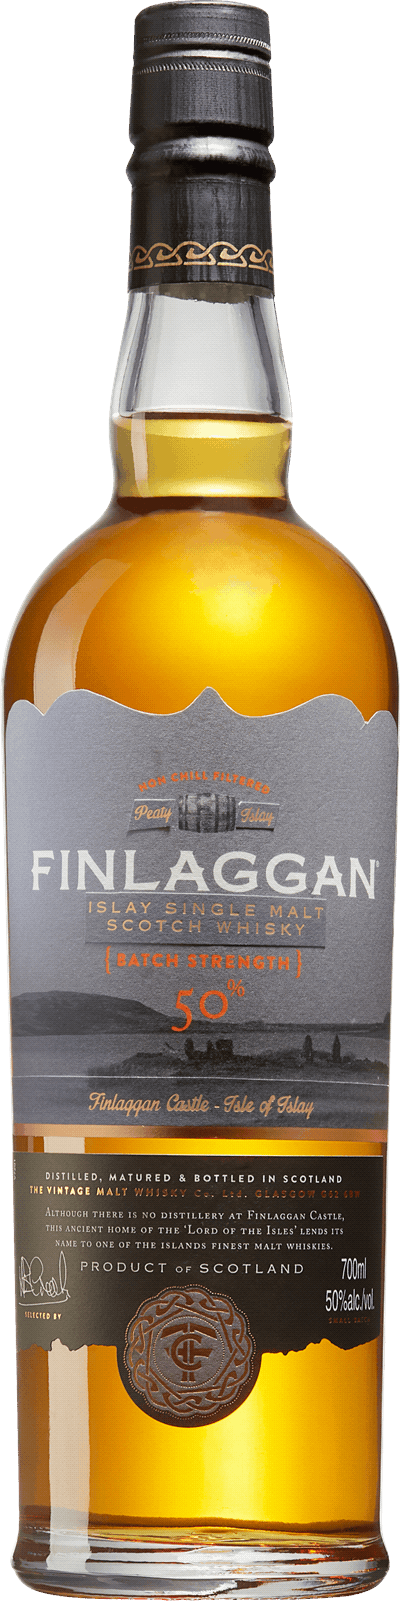 Finlaggan Batch Strength – Islay Single Malt